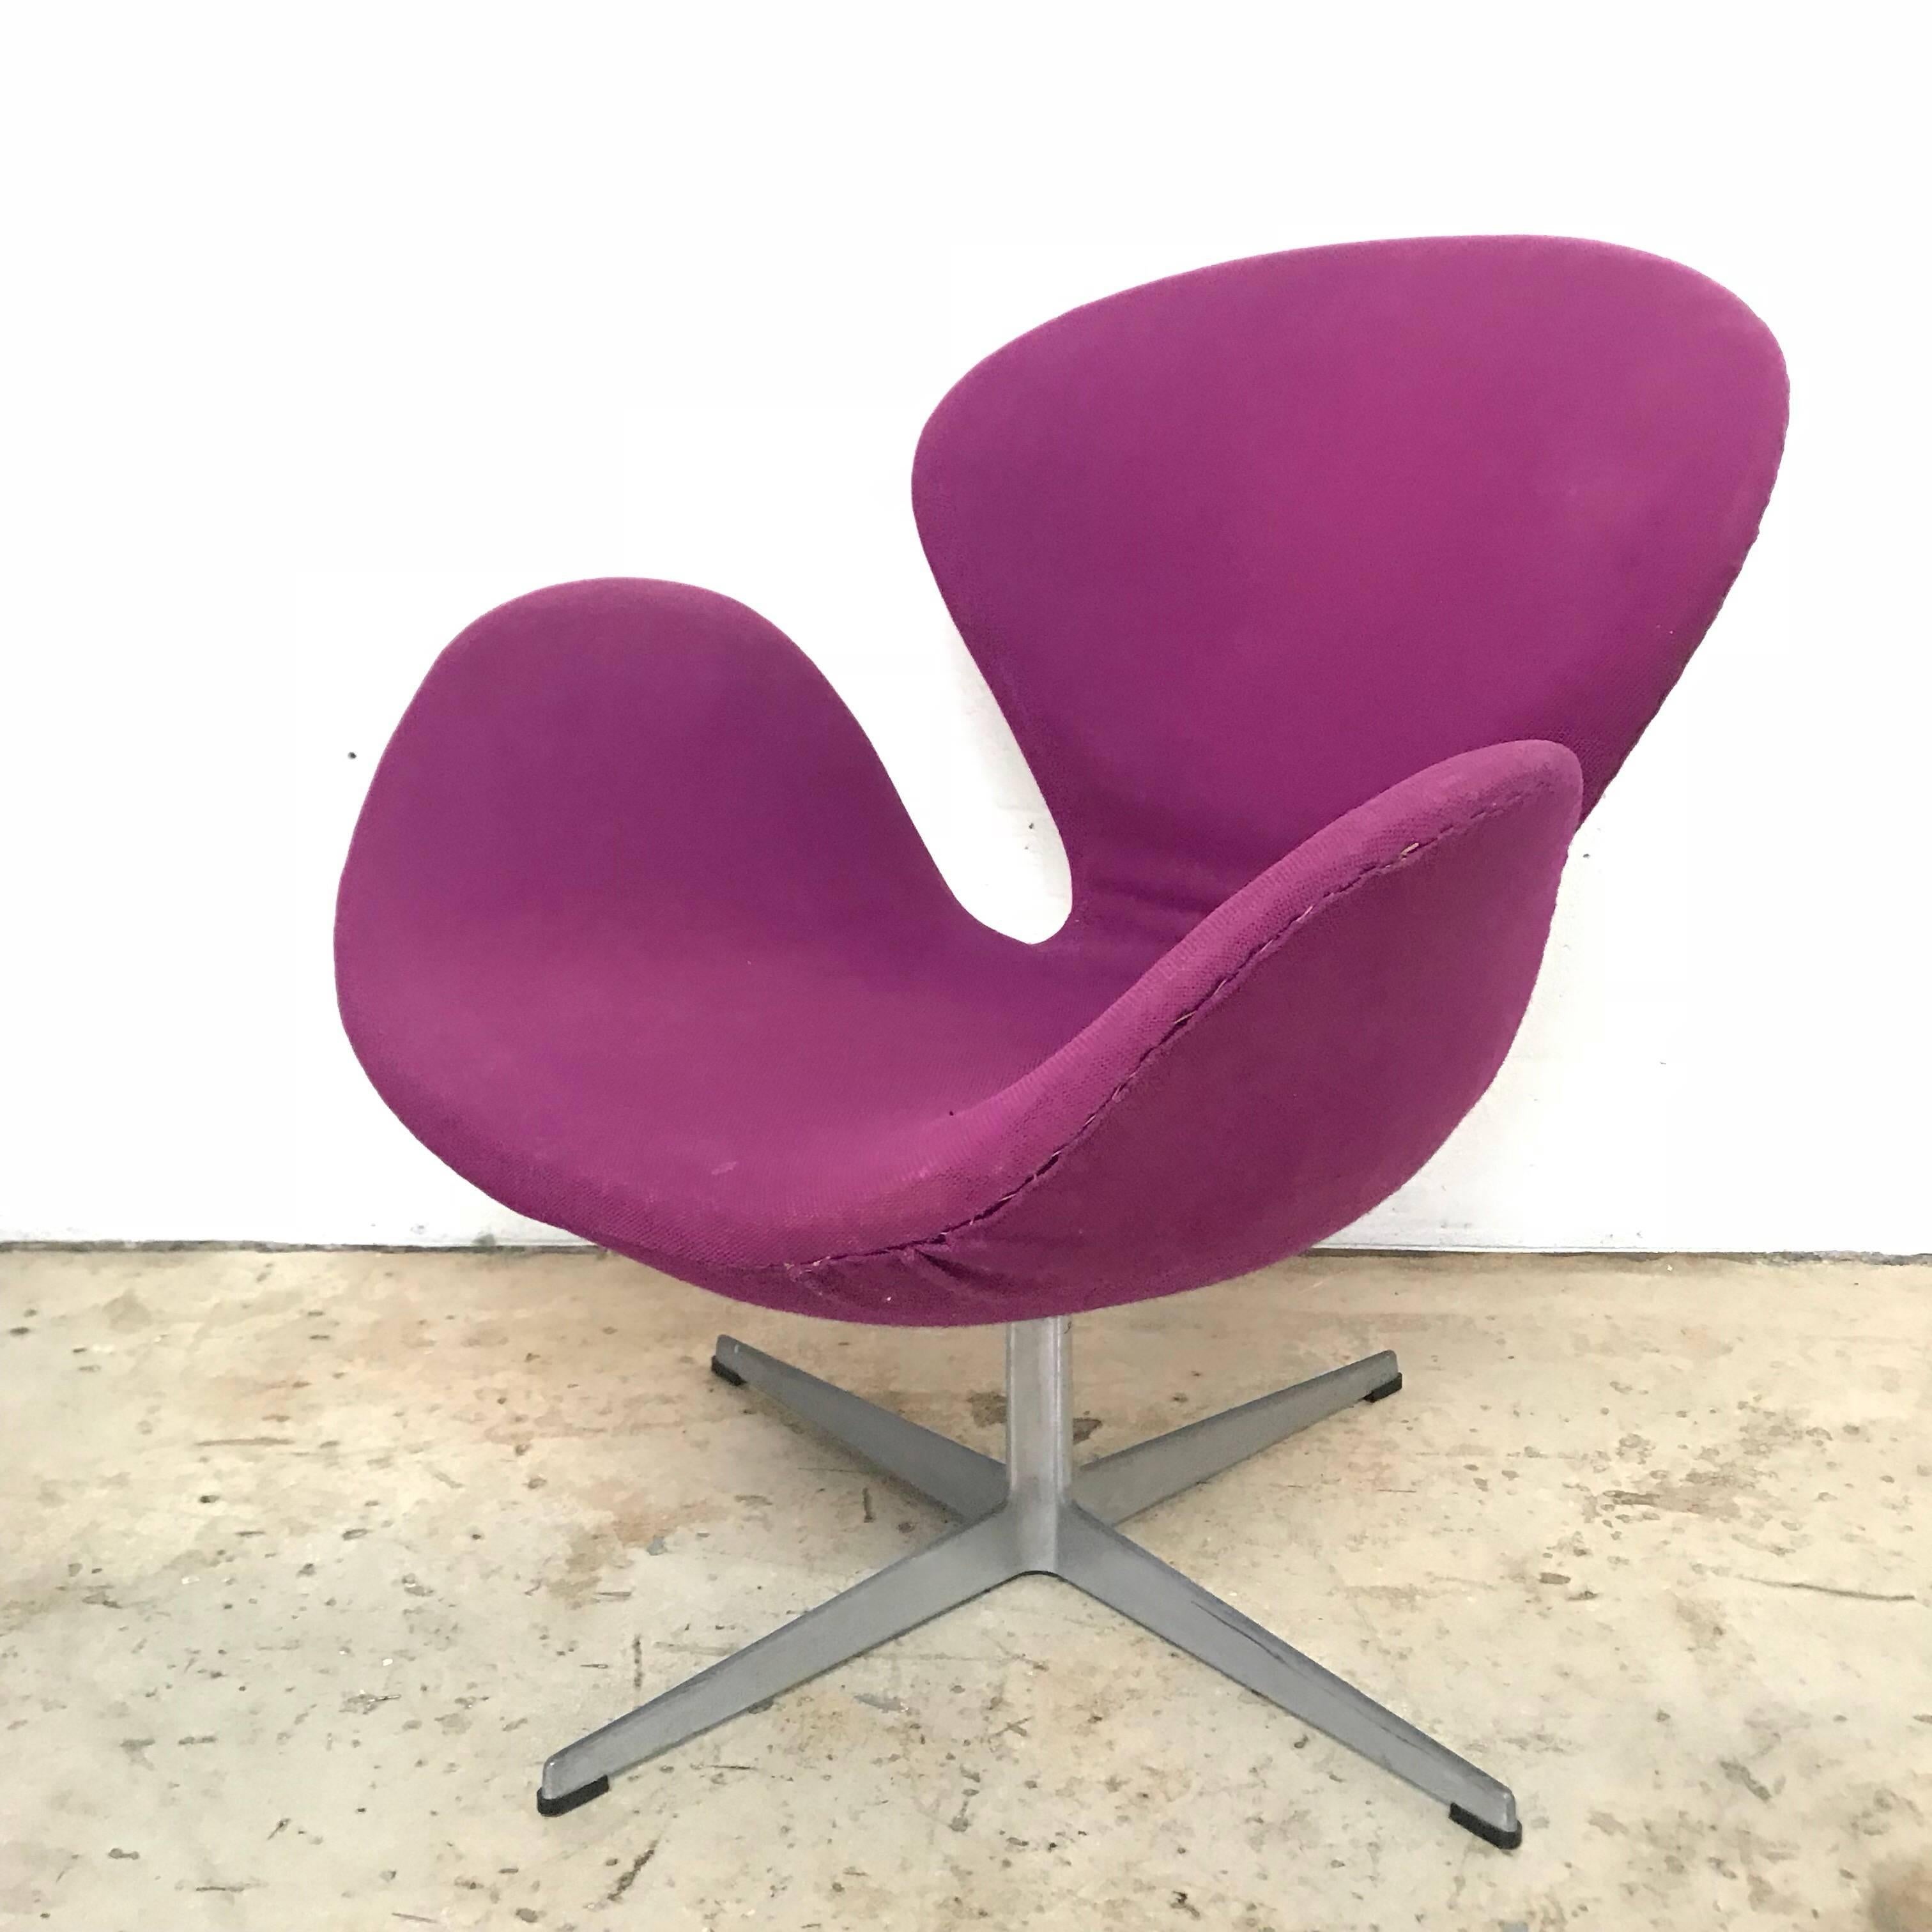 Danish Original Arne Jacobsen “Swan” Chair No. 7105 for Fritz Hansen